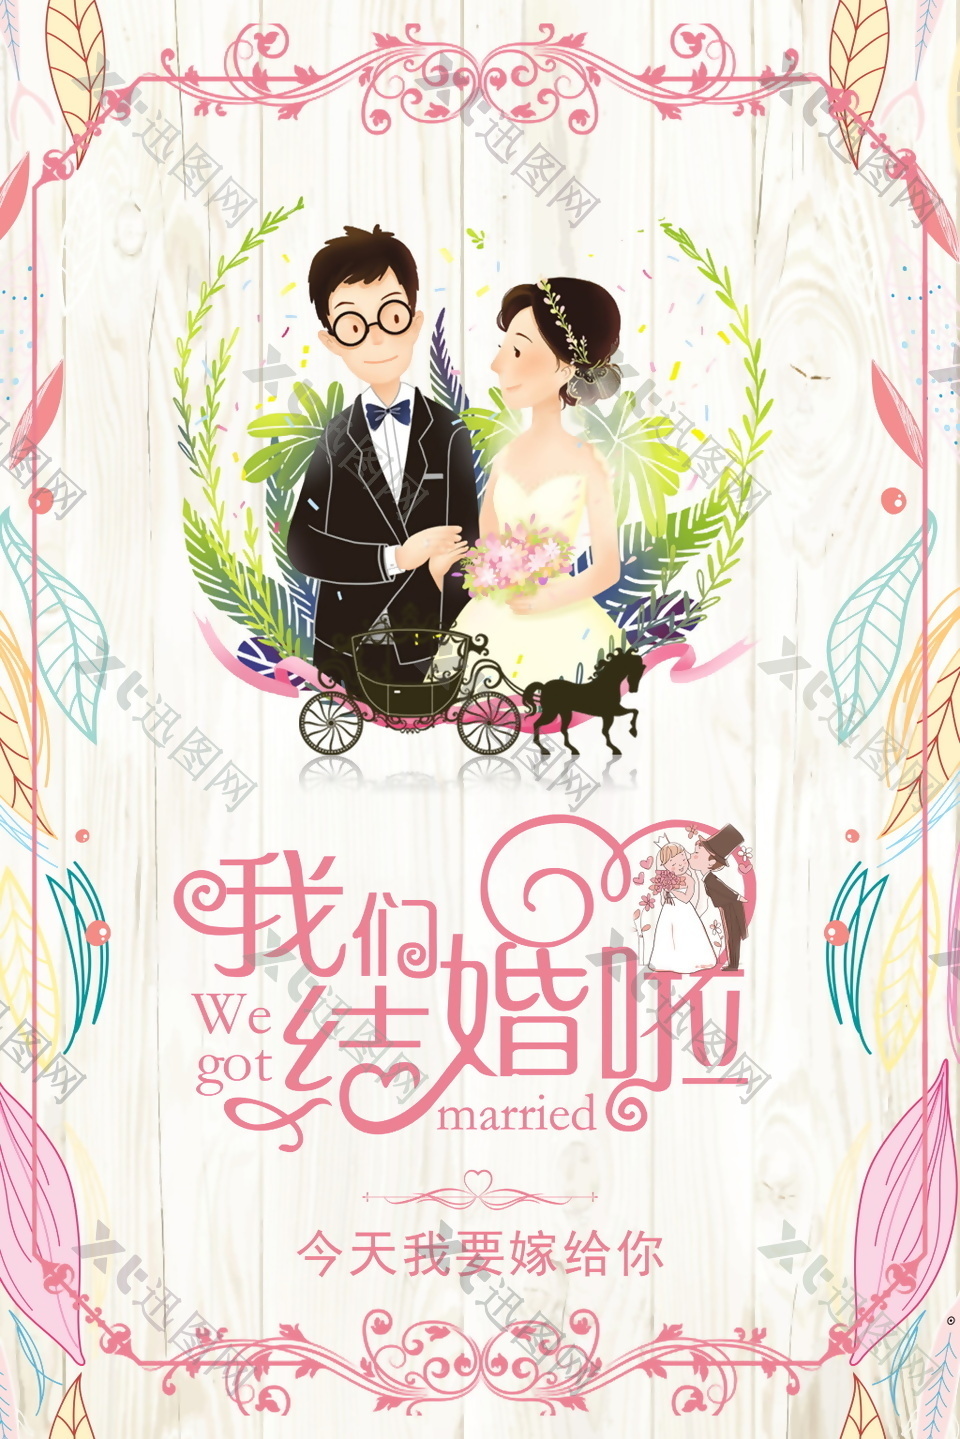 小清新唯美婚礼相亲爱情主题海报